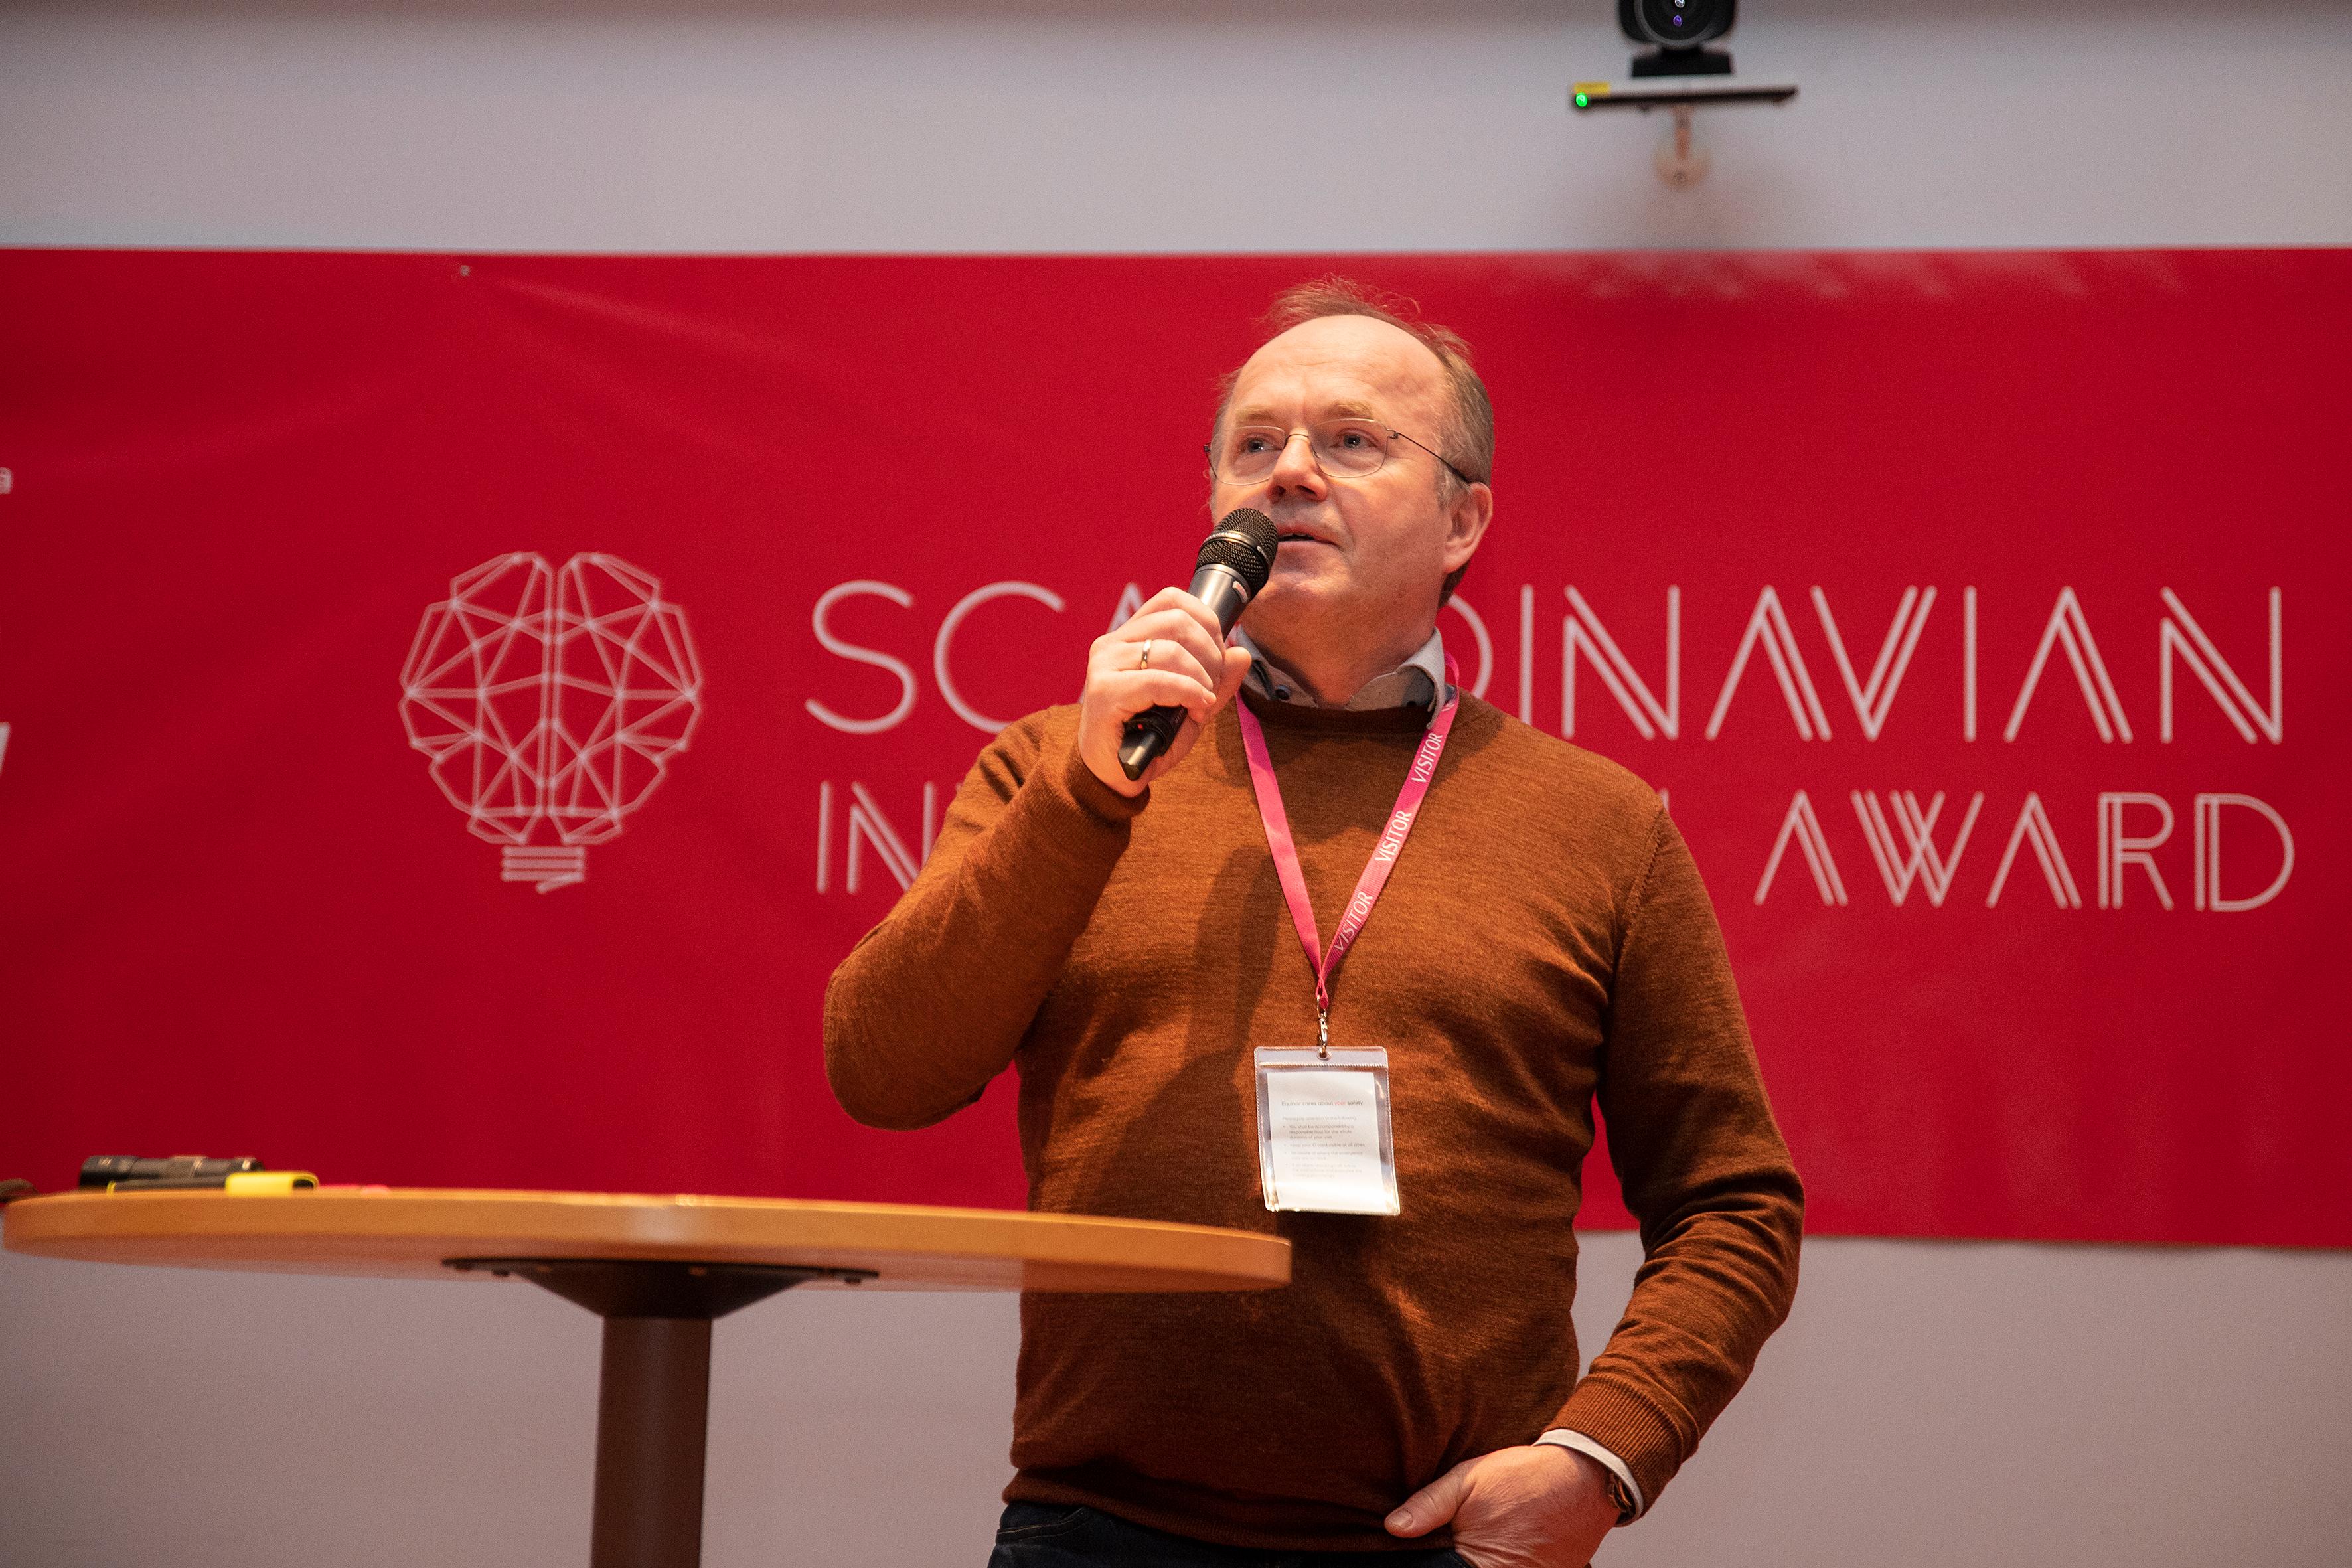 Scandinavian Innovation Award 2020